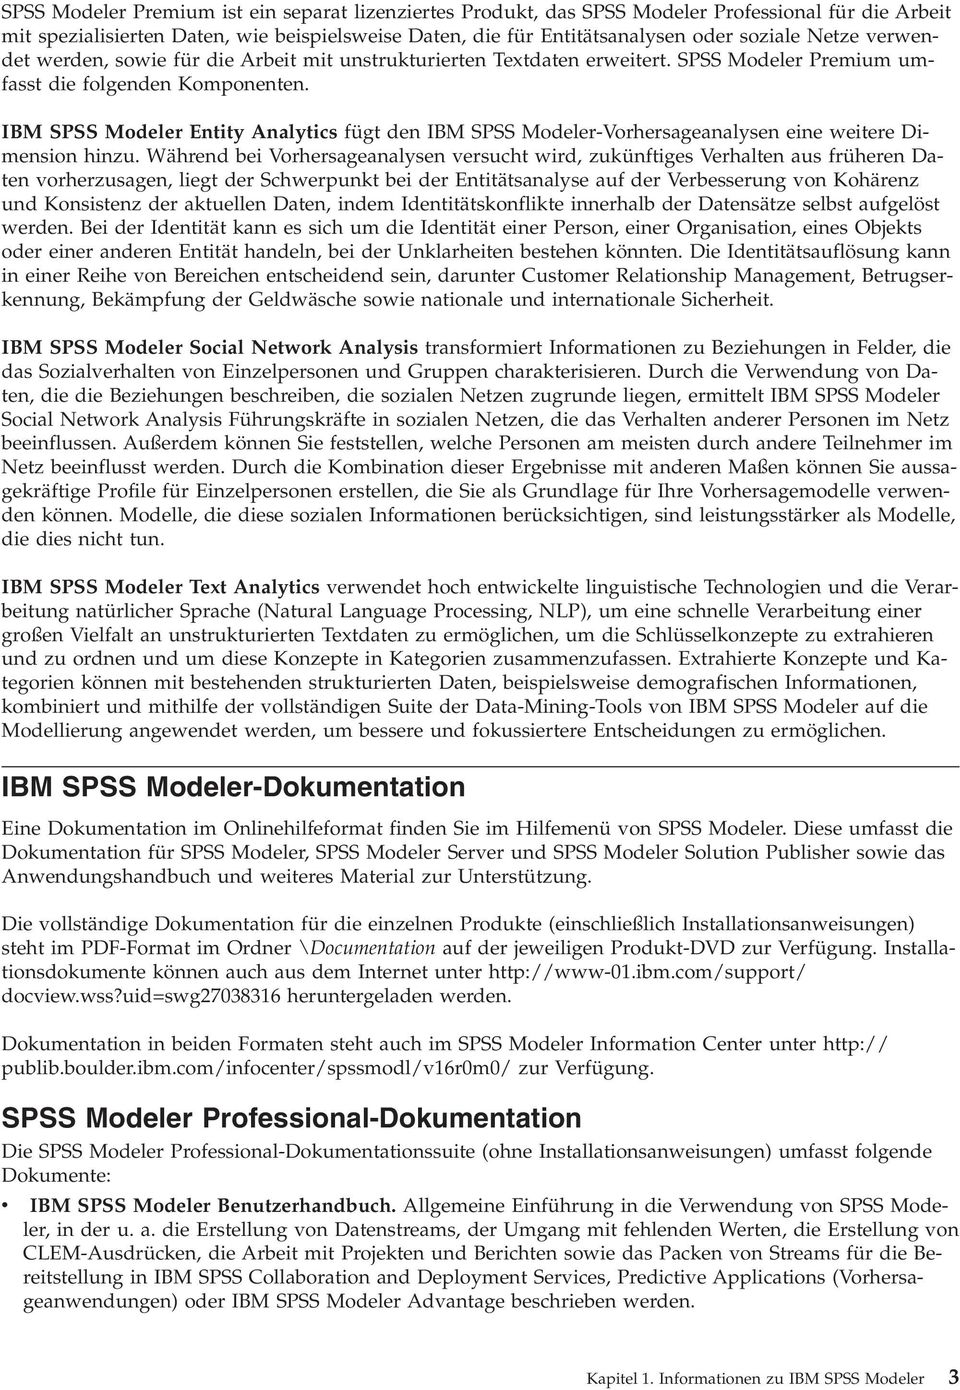 IBM SPSS Modeler Entity Analytics fügt den IBM SPSS Modeler-Vorhersageanalysen eine weitere Dimension hinzu.